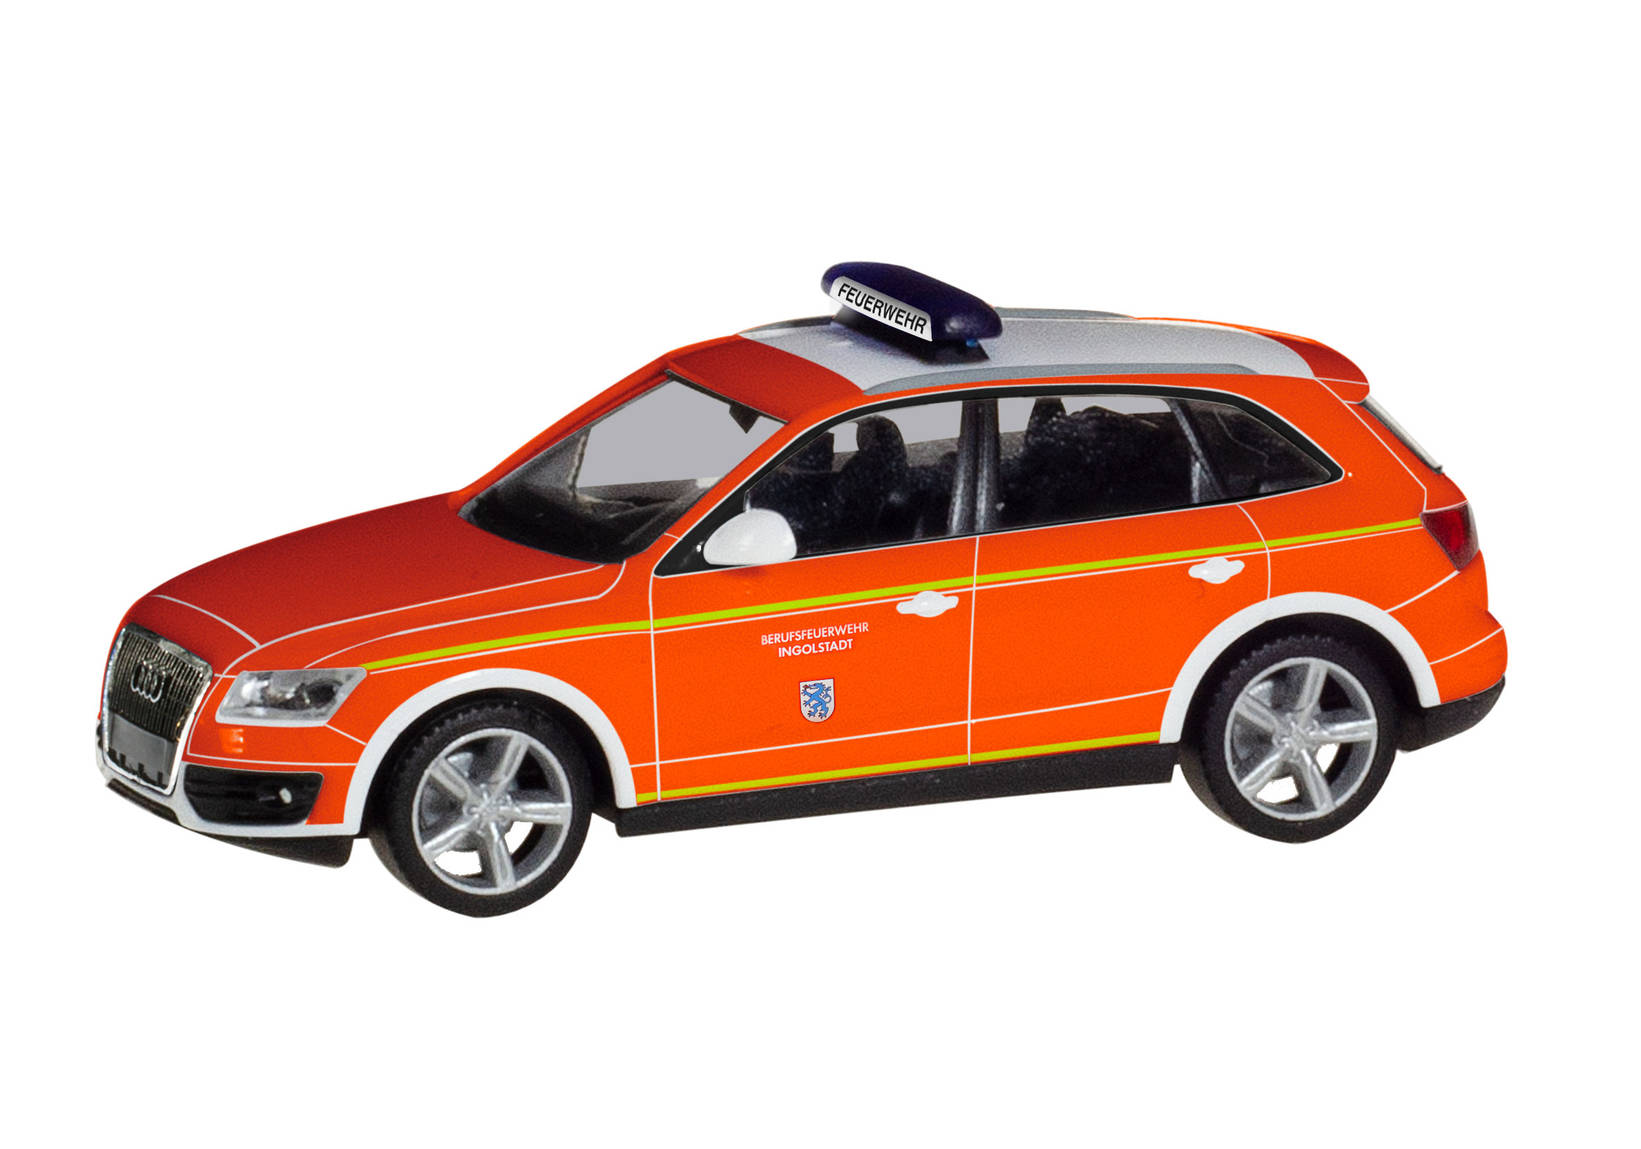 Audi Q5 Kommandowagen "Feuerwehr Ingolstadt"